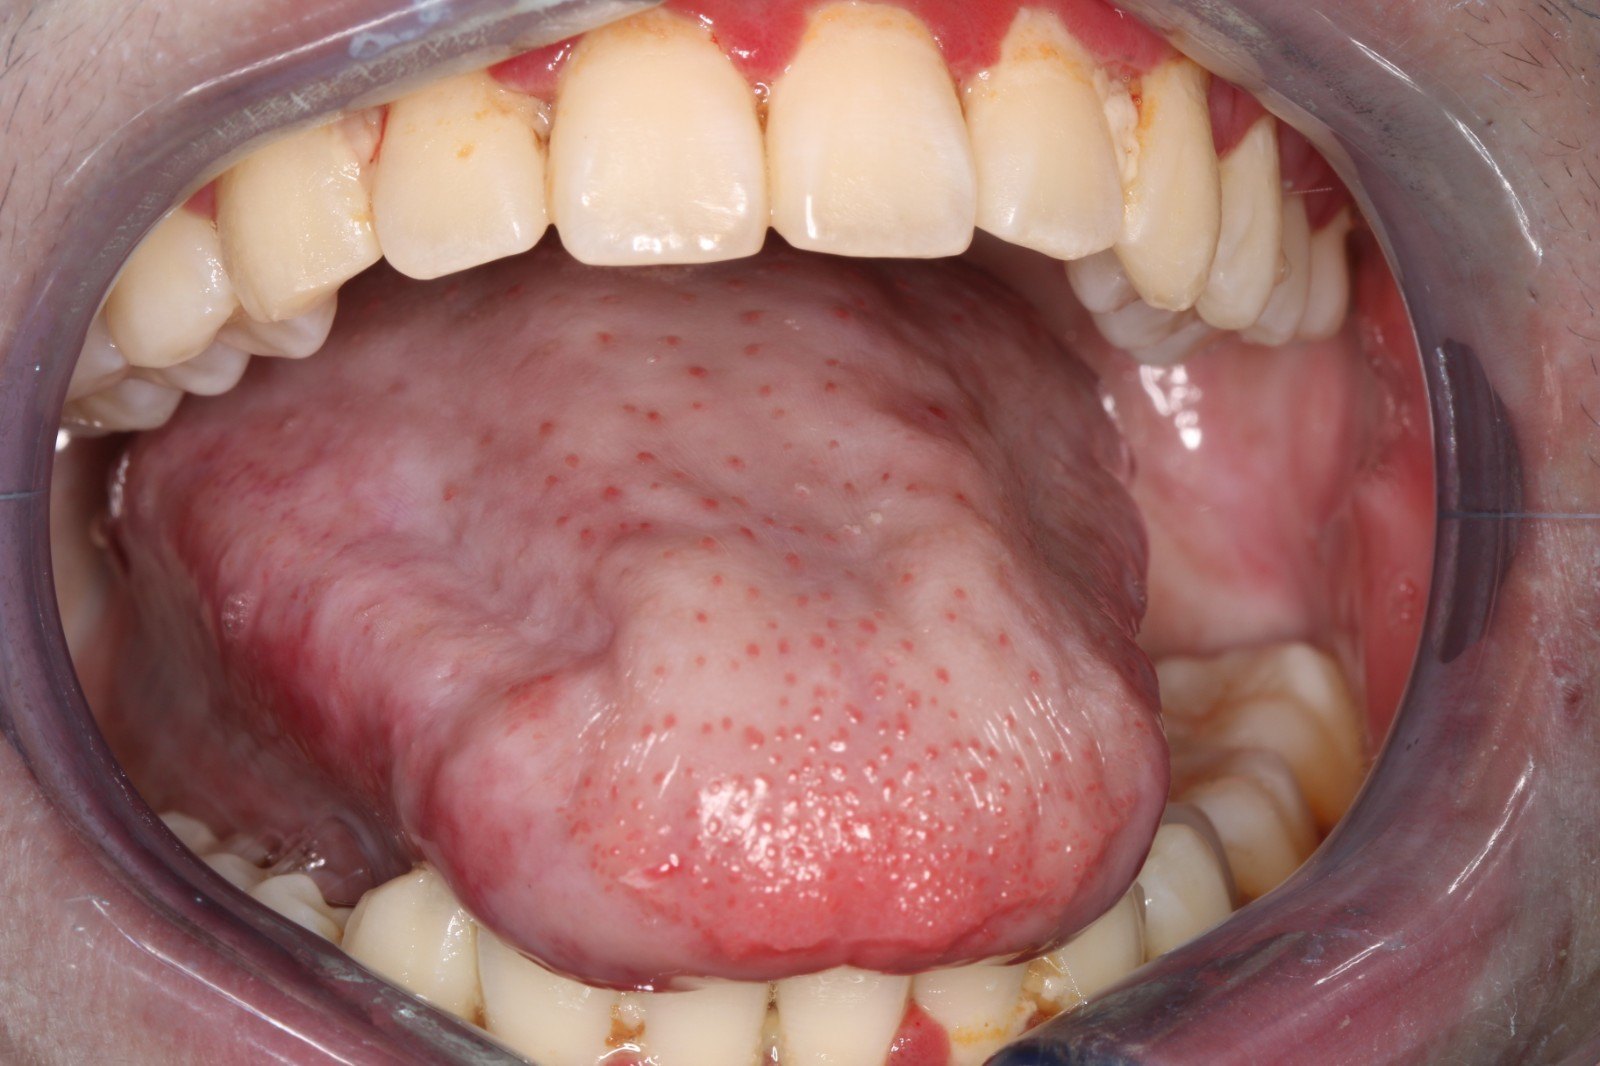 舌尖粘膜病的症状图片图片